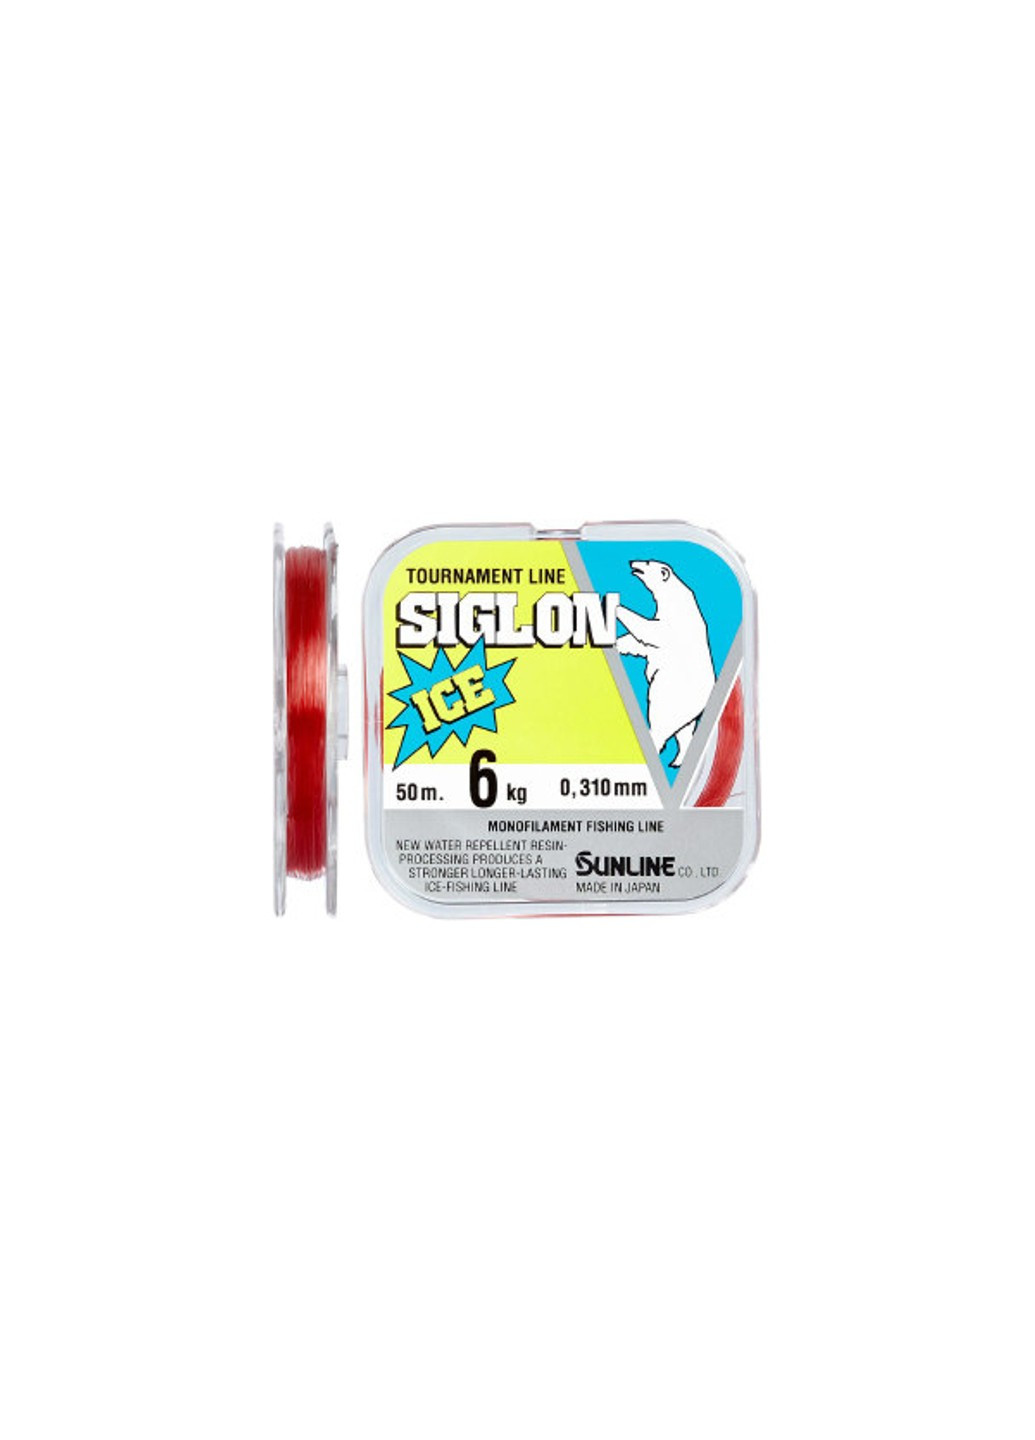 Волосінь Siglon F ICE 50m # 3.5 / 0.310mm 6.0kg Sunline (252468042)